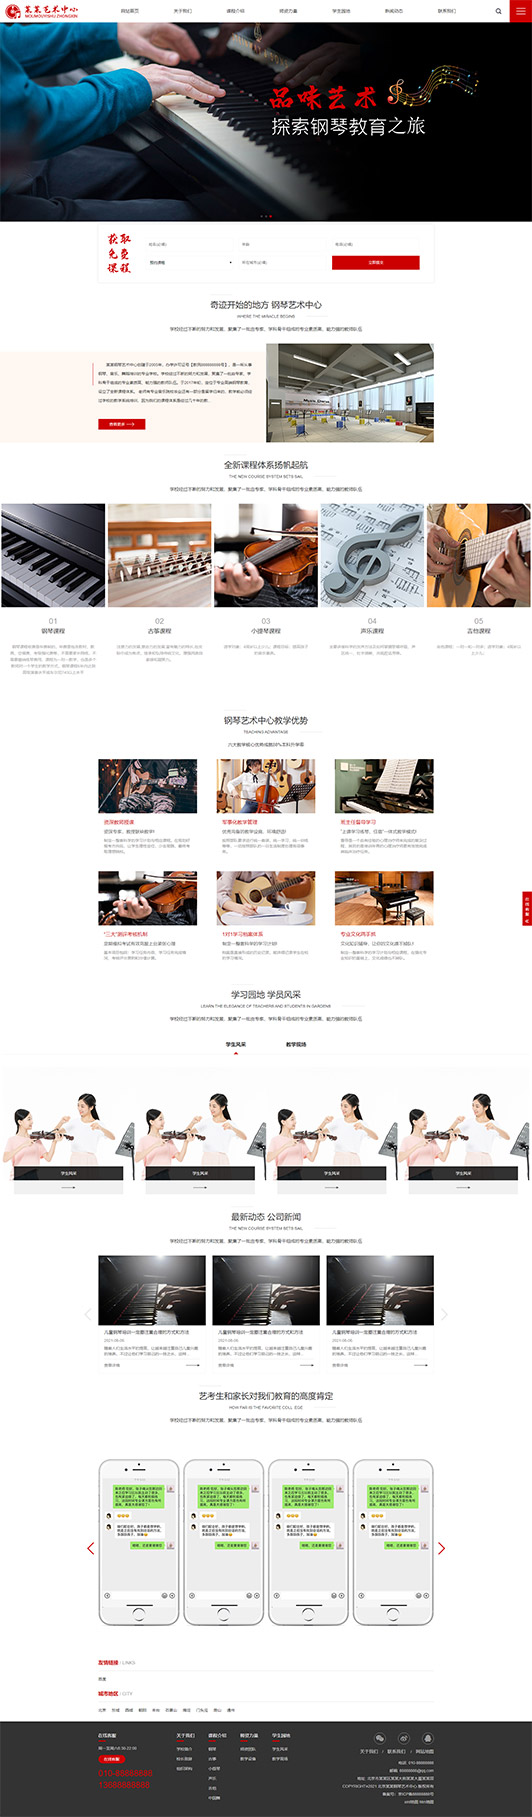 忻州钢琴艺术培训公司响应式企业网站